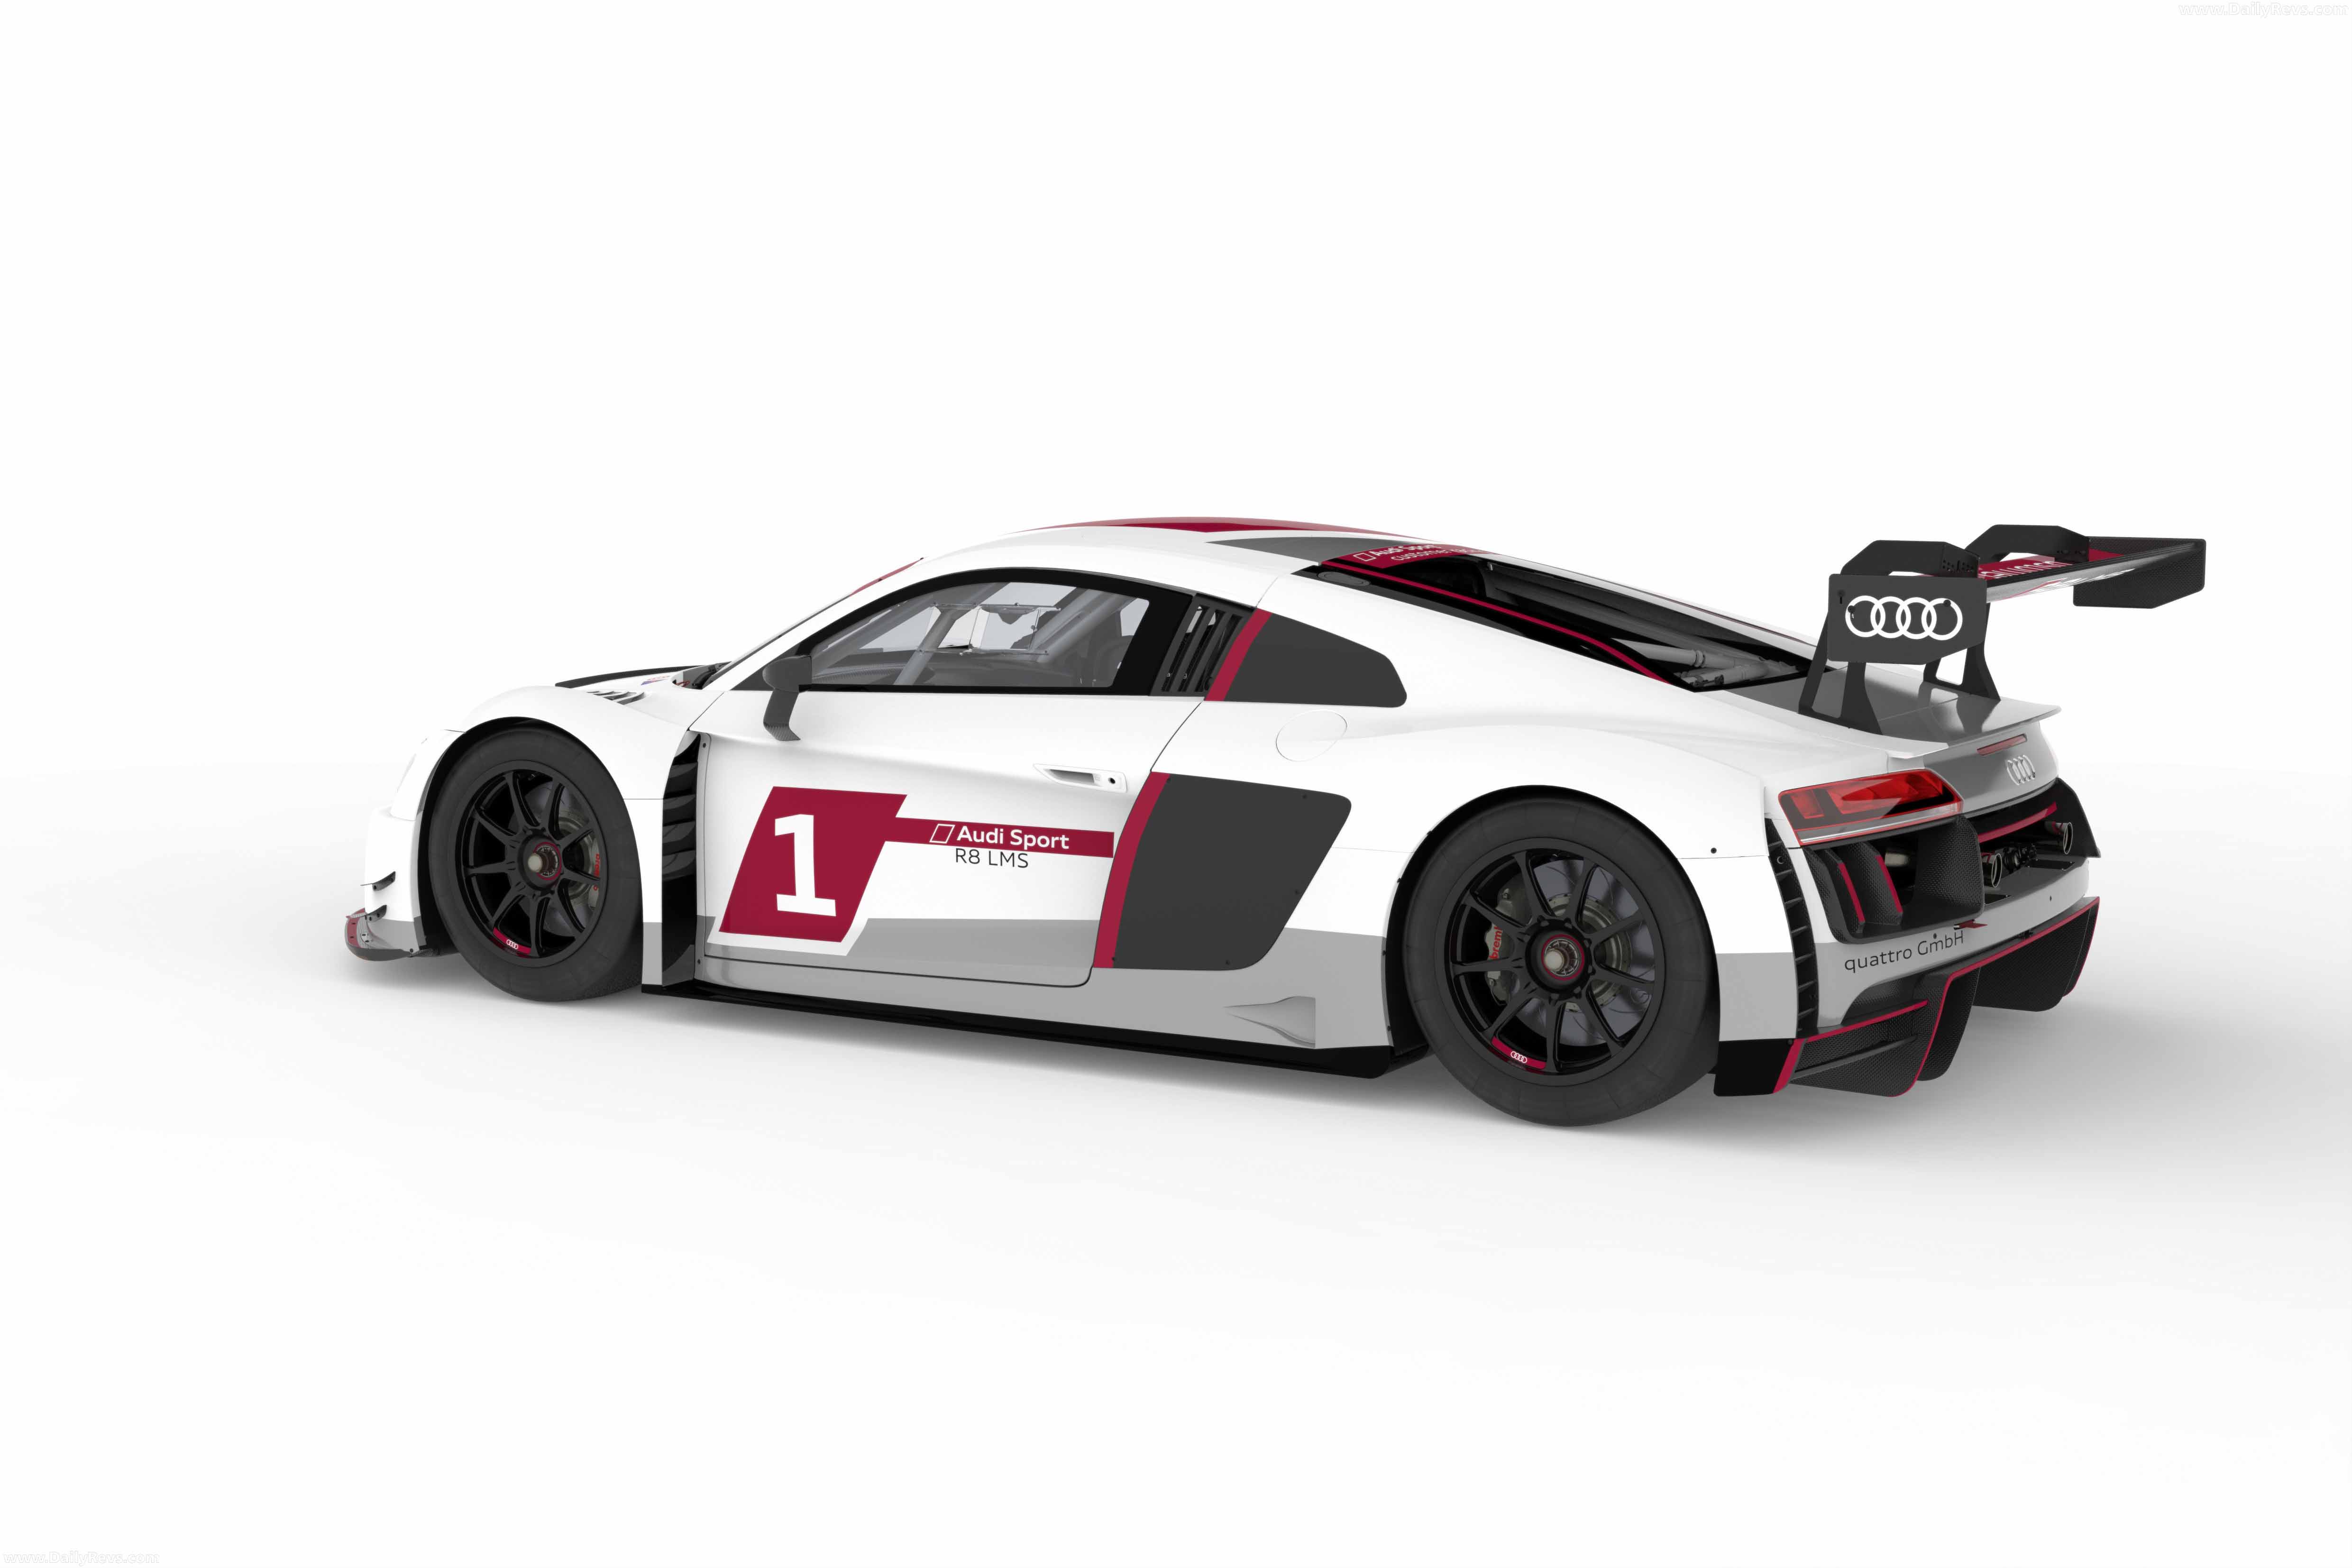 2015 Audi R8 LMS